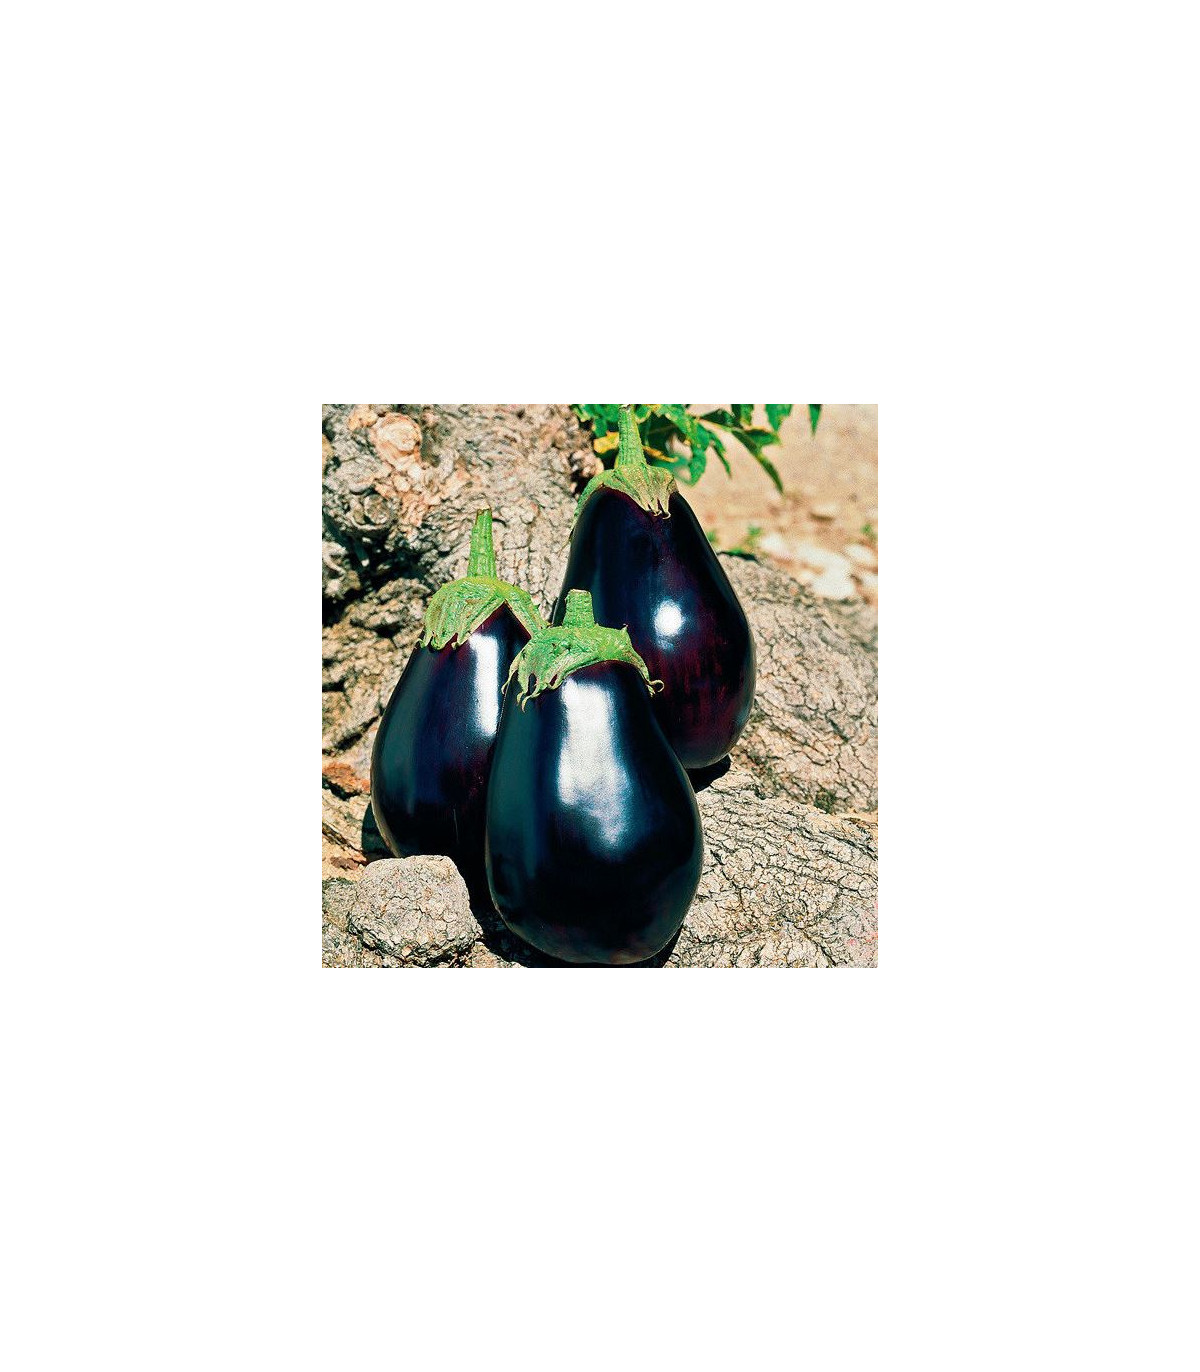 Baklažán vajcoplodý český raný - Solanum melongena - semená baklažánu - 100 ks